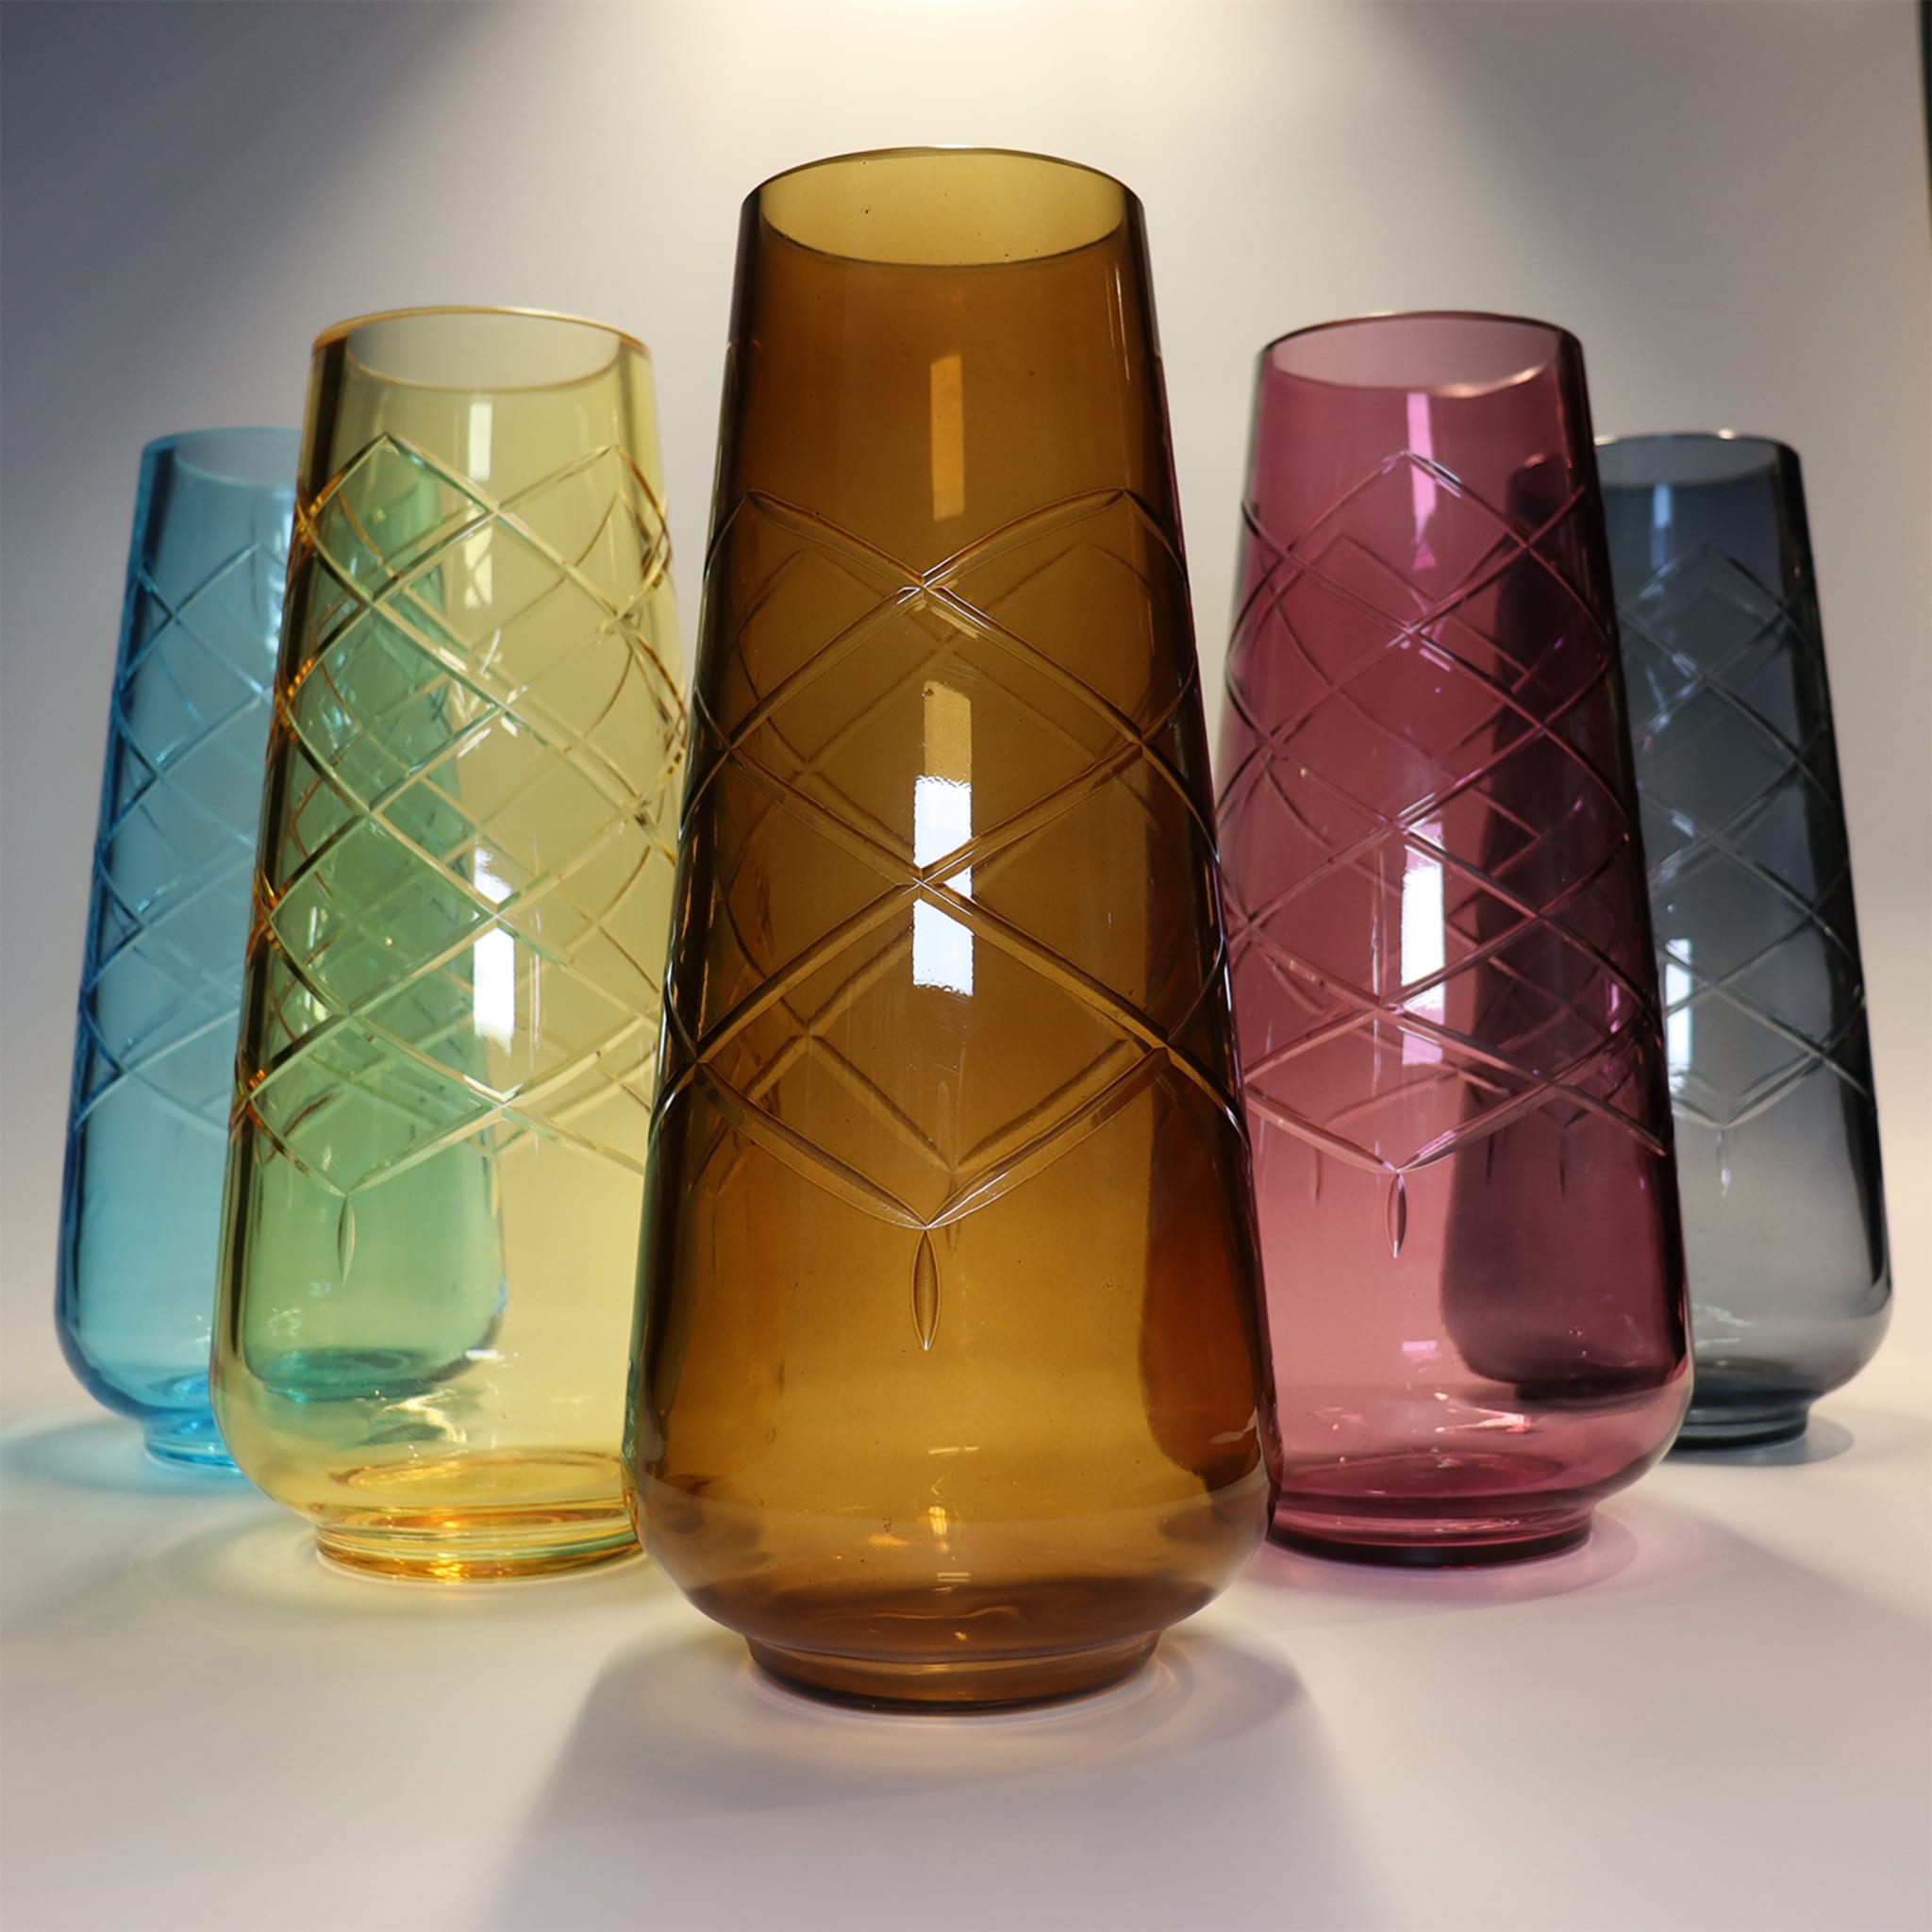 Girata Sky Blue Murano Glass Vase - Alternative view 1